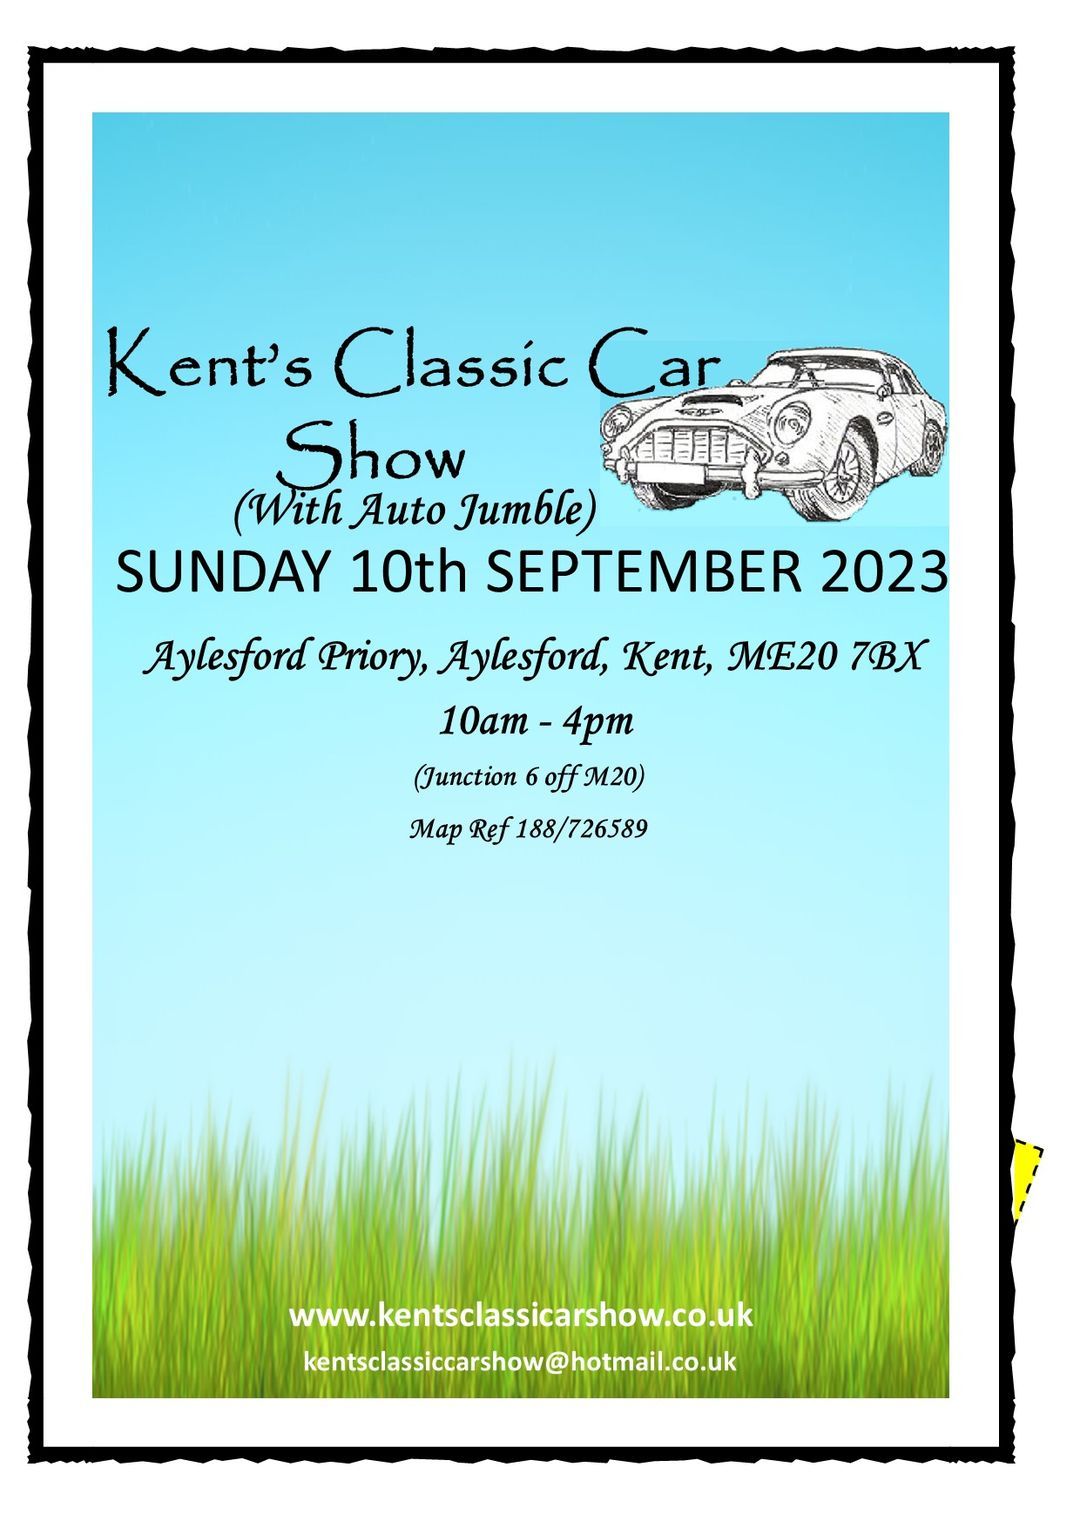 Kents Classic Car Show